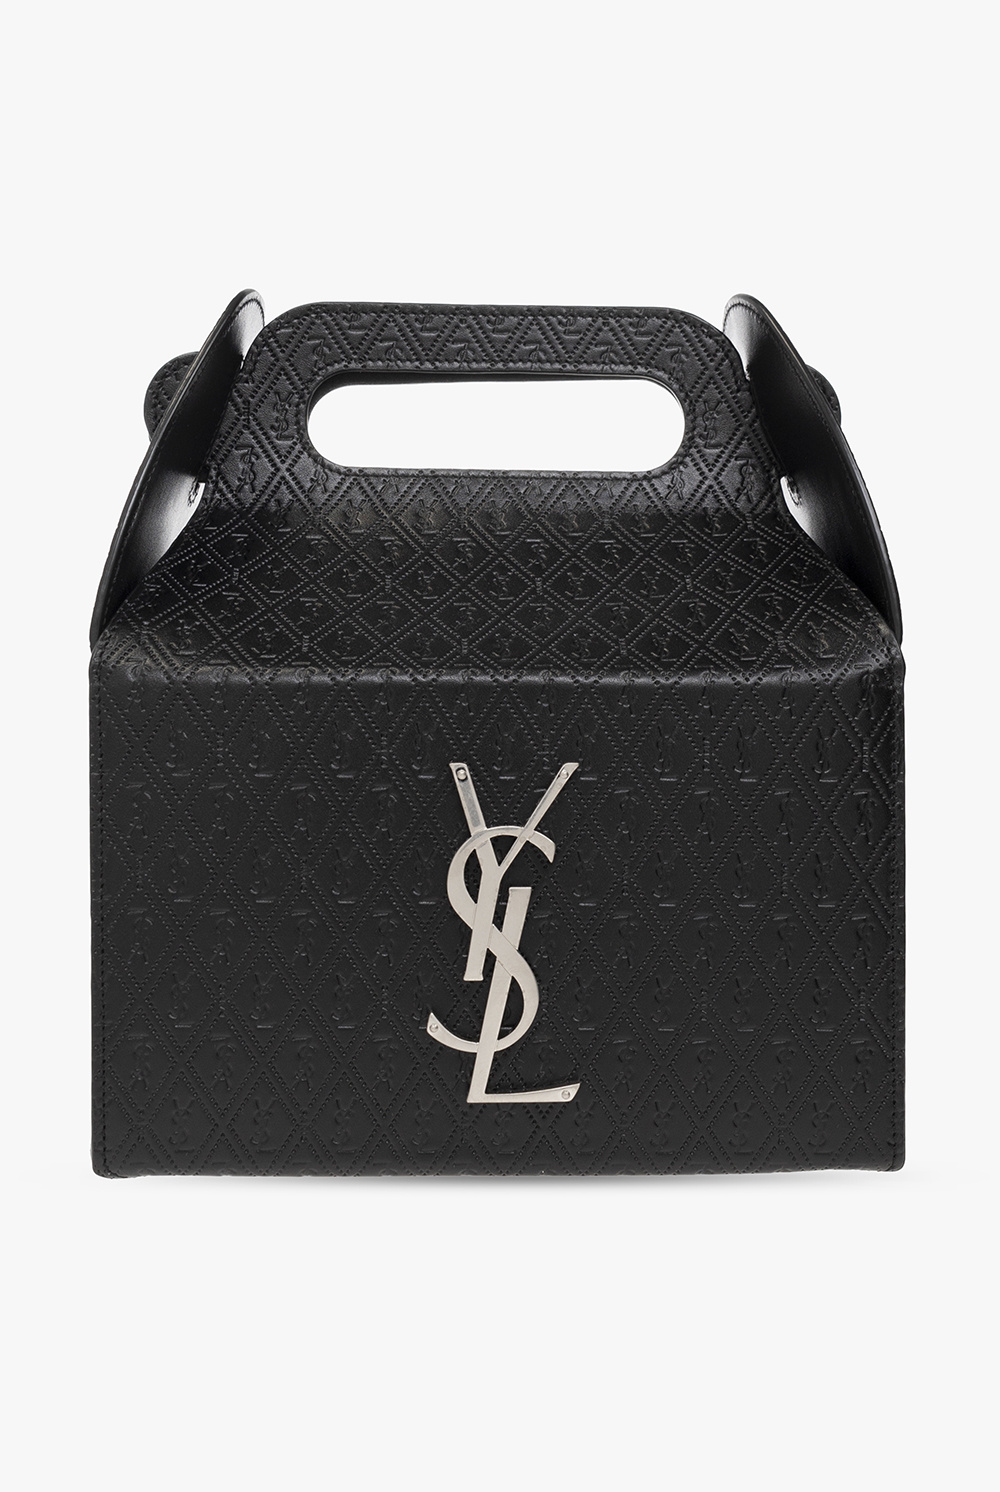 Yves Saint Laurent Saint Laurent tote bag women's fashionable  second-hand Japan